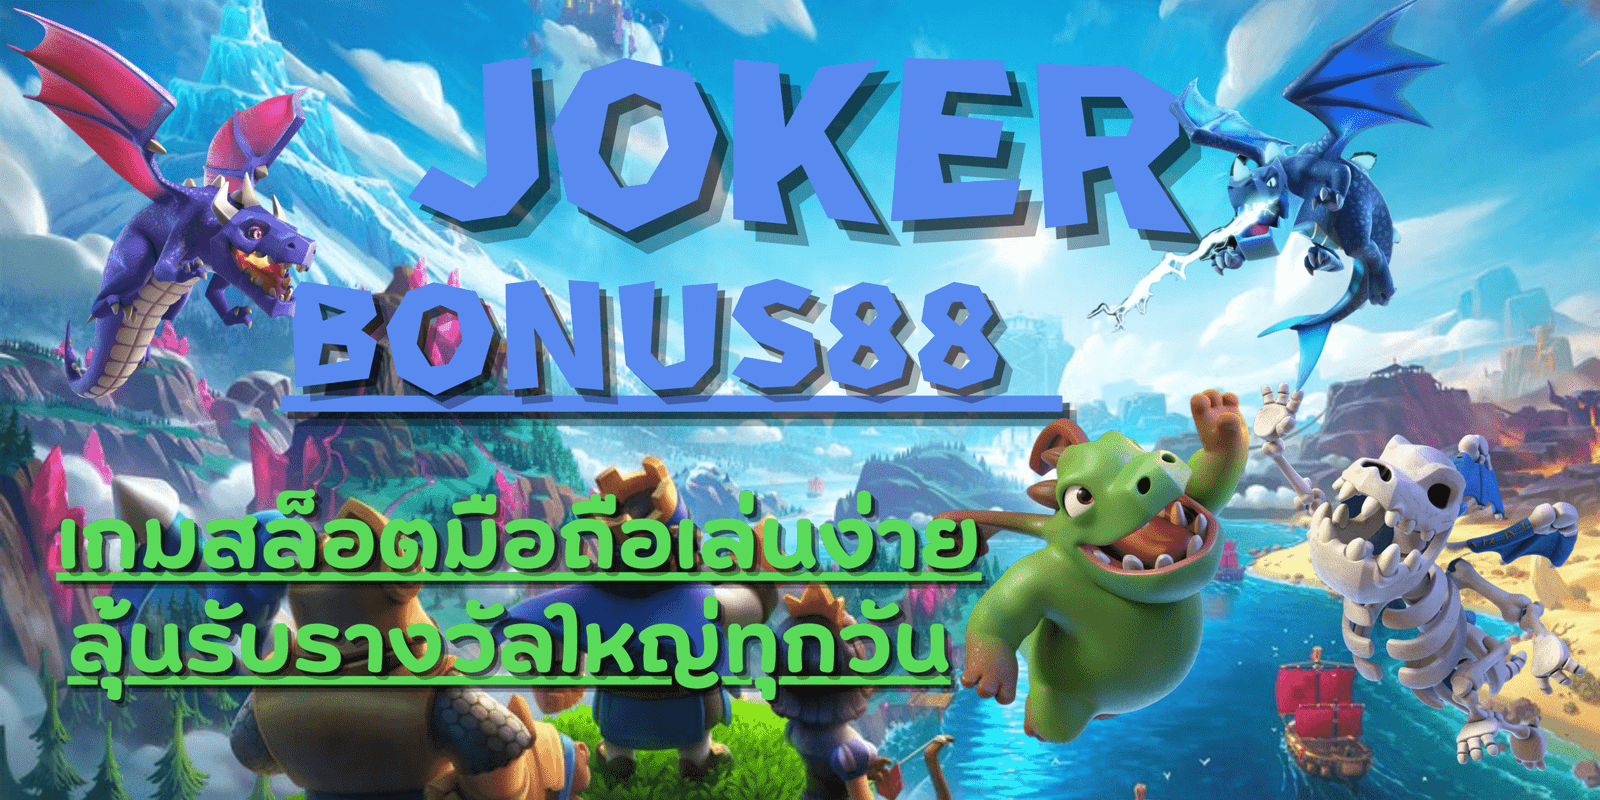 joker-bonus88-ลุ้นรับรางวัล